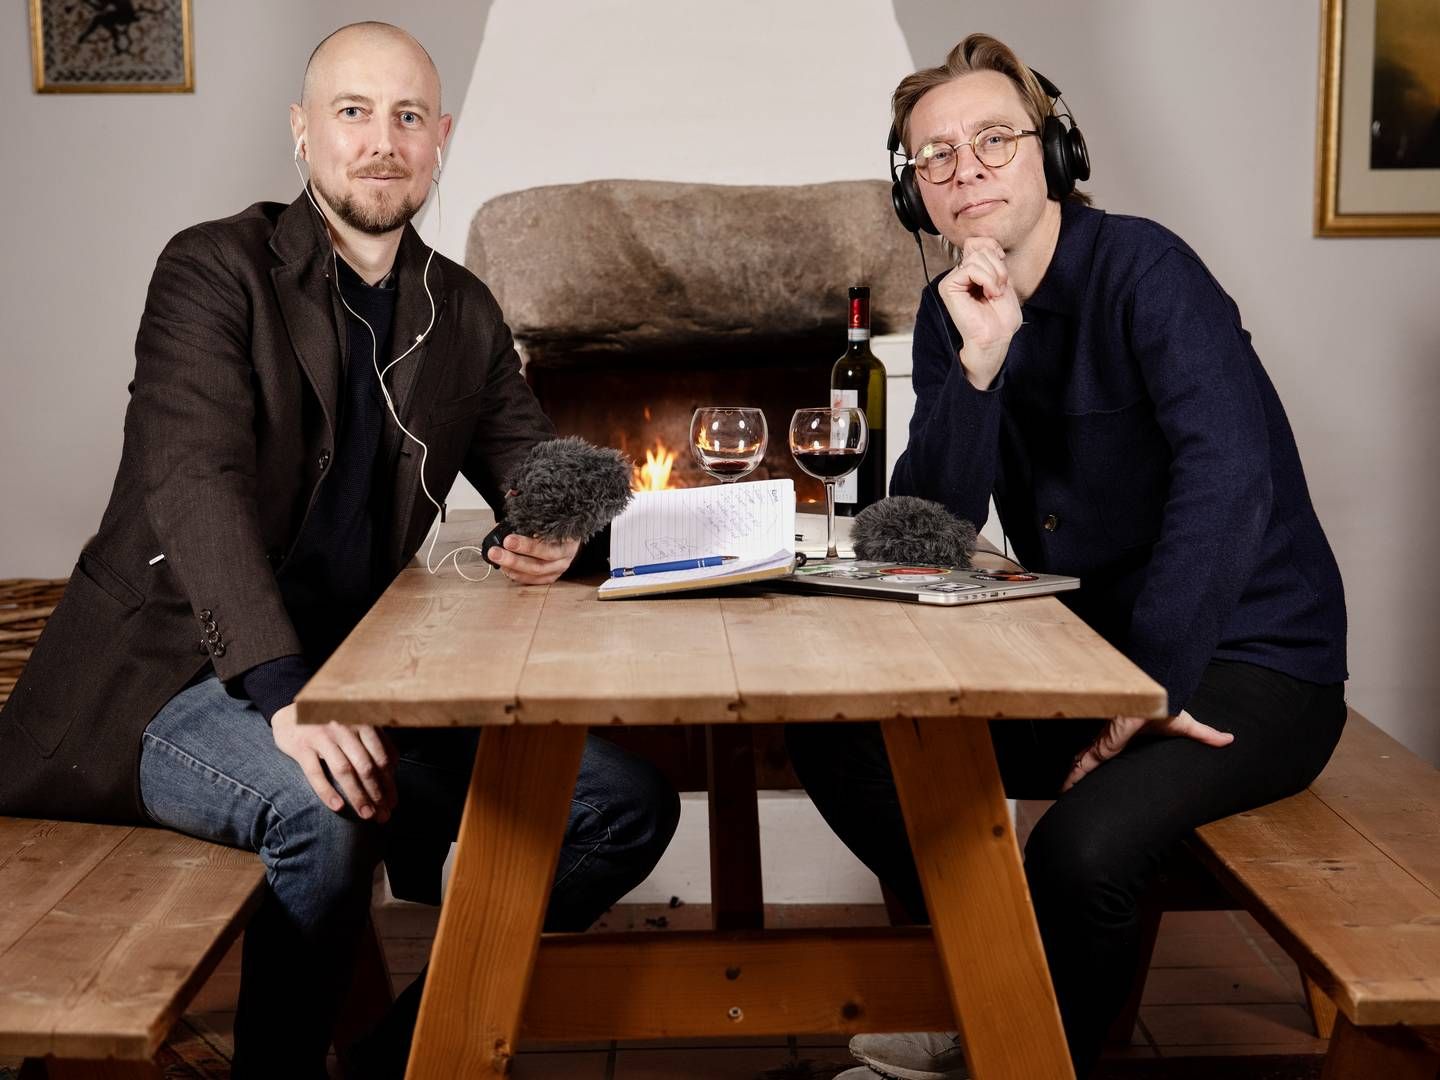 Kasper Nielsen og Brian Lykke satte strøm til podcasten "Undskyld, vi roder" i sommeren 2020. R8dio Aps er bygget op om det fiktive univers i podcasten. | Foto: Valdemar Ren